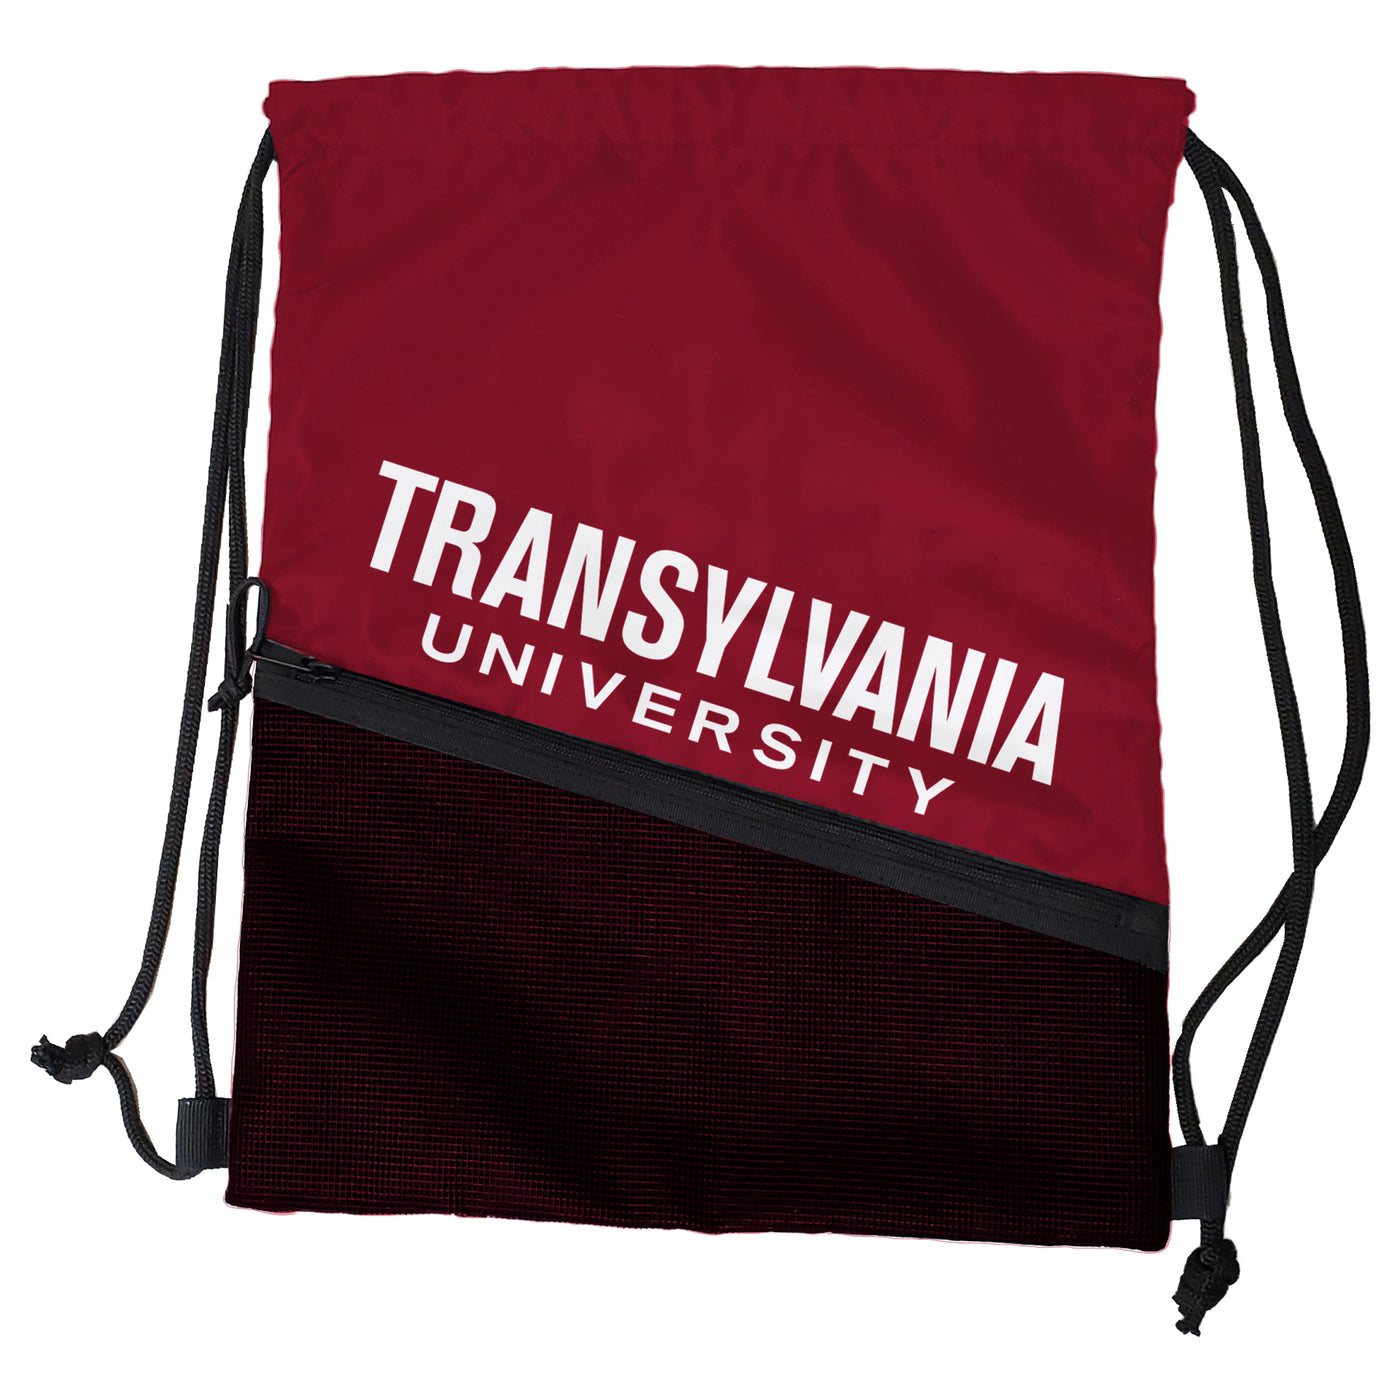 Transylvania University Tilt Backsack